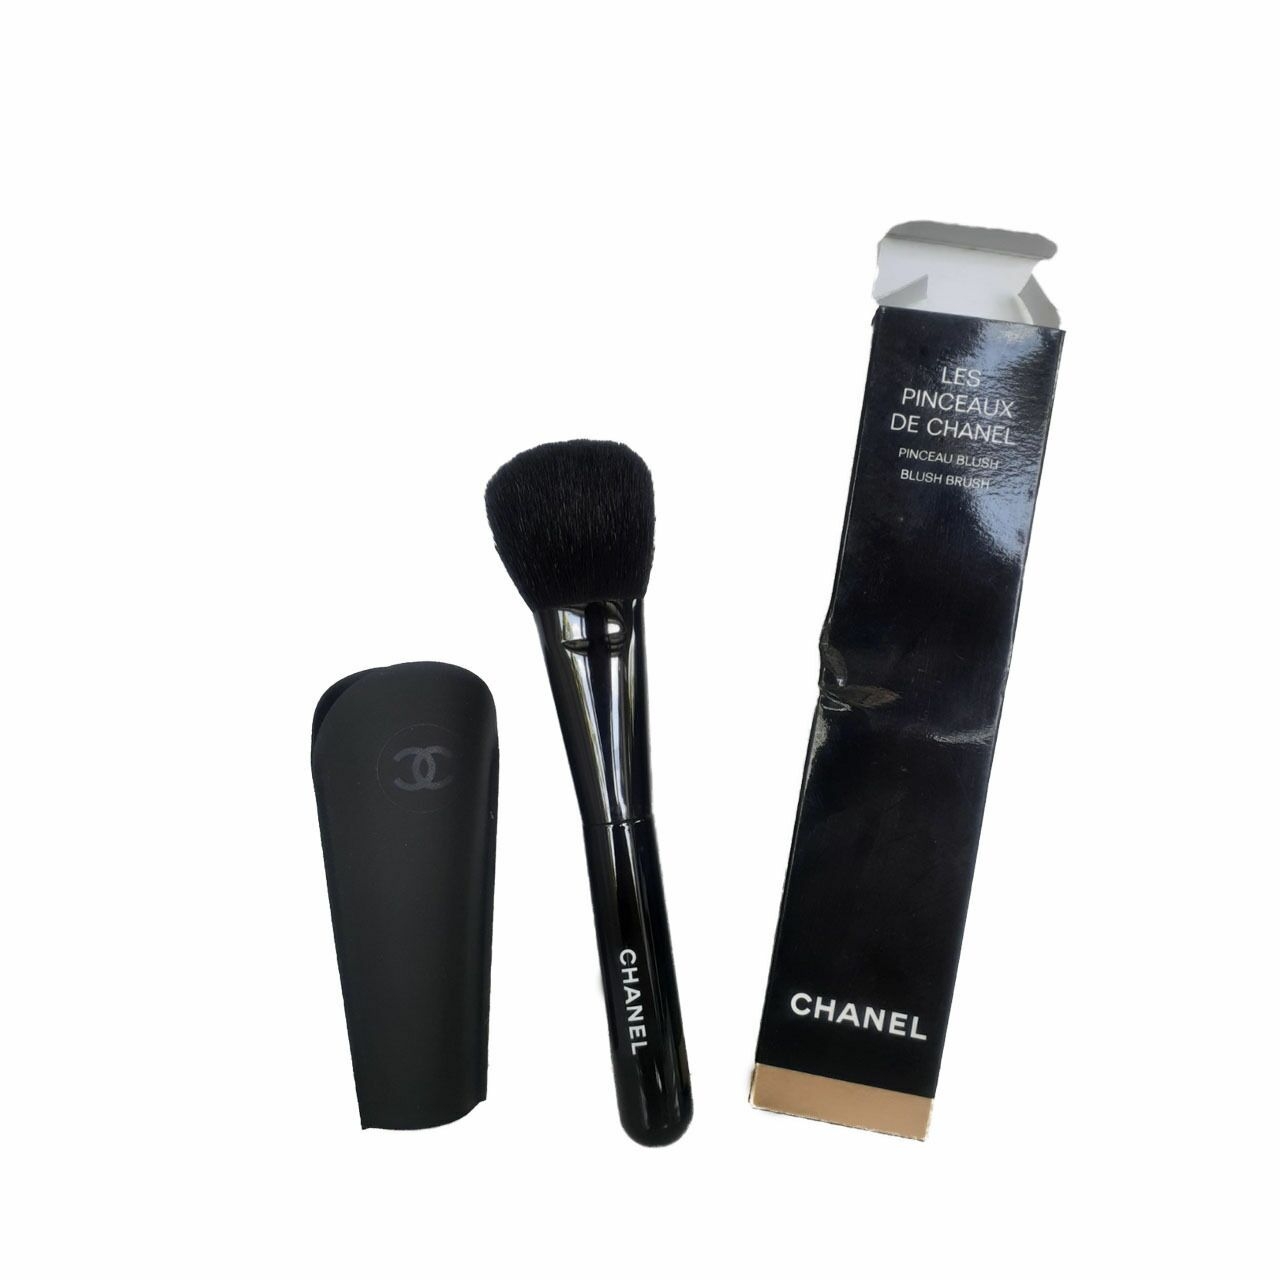 Chanel Blush Brush (Les Pinceaux De Chanel)